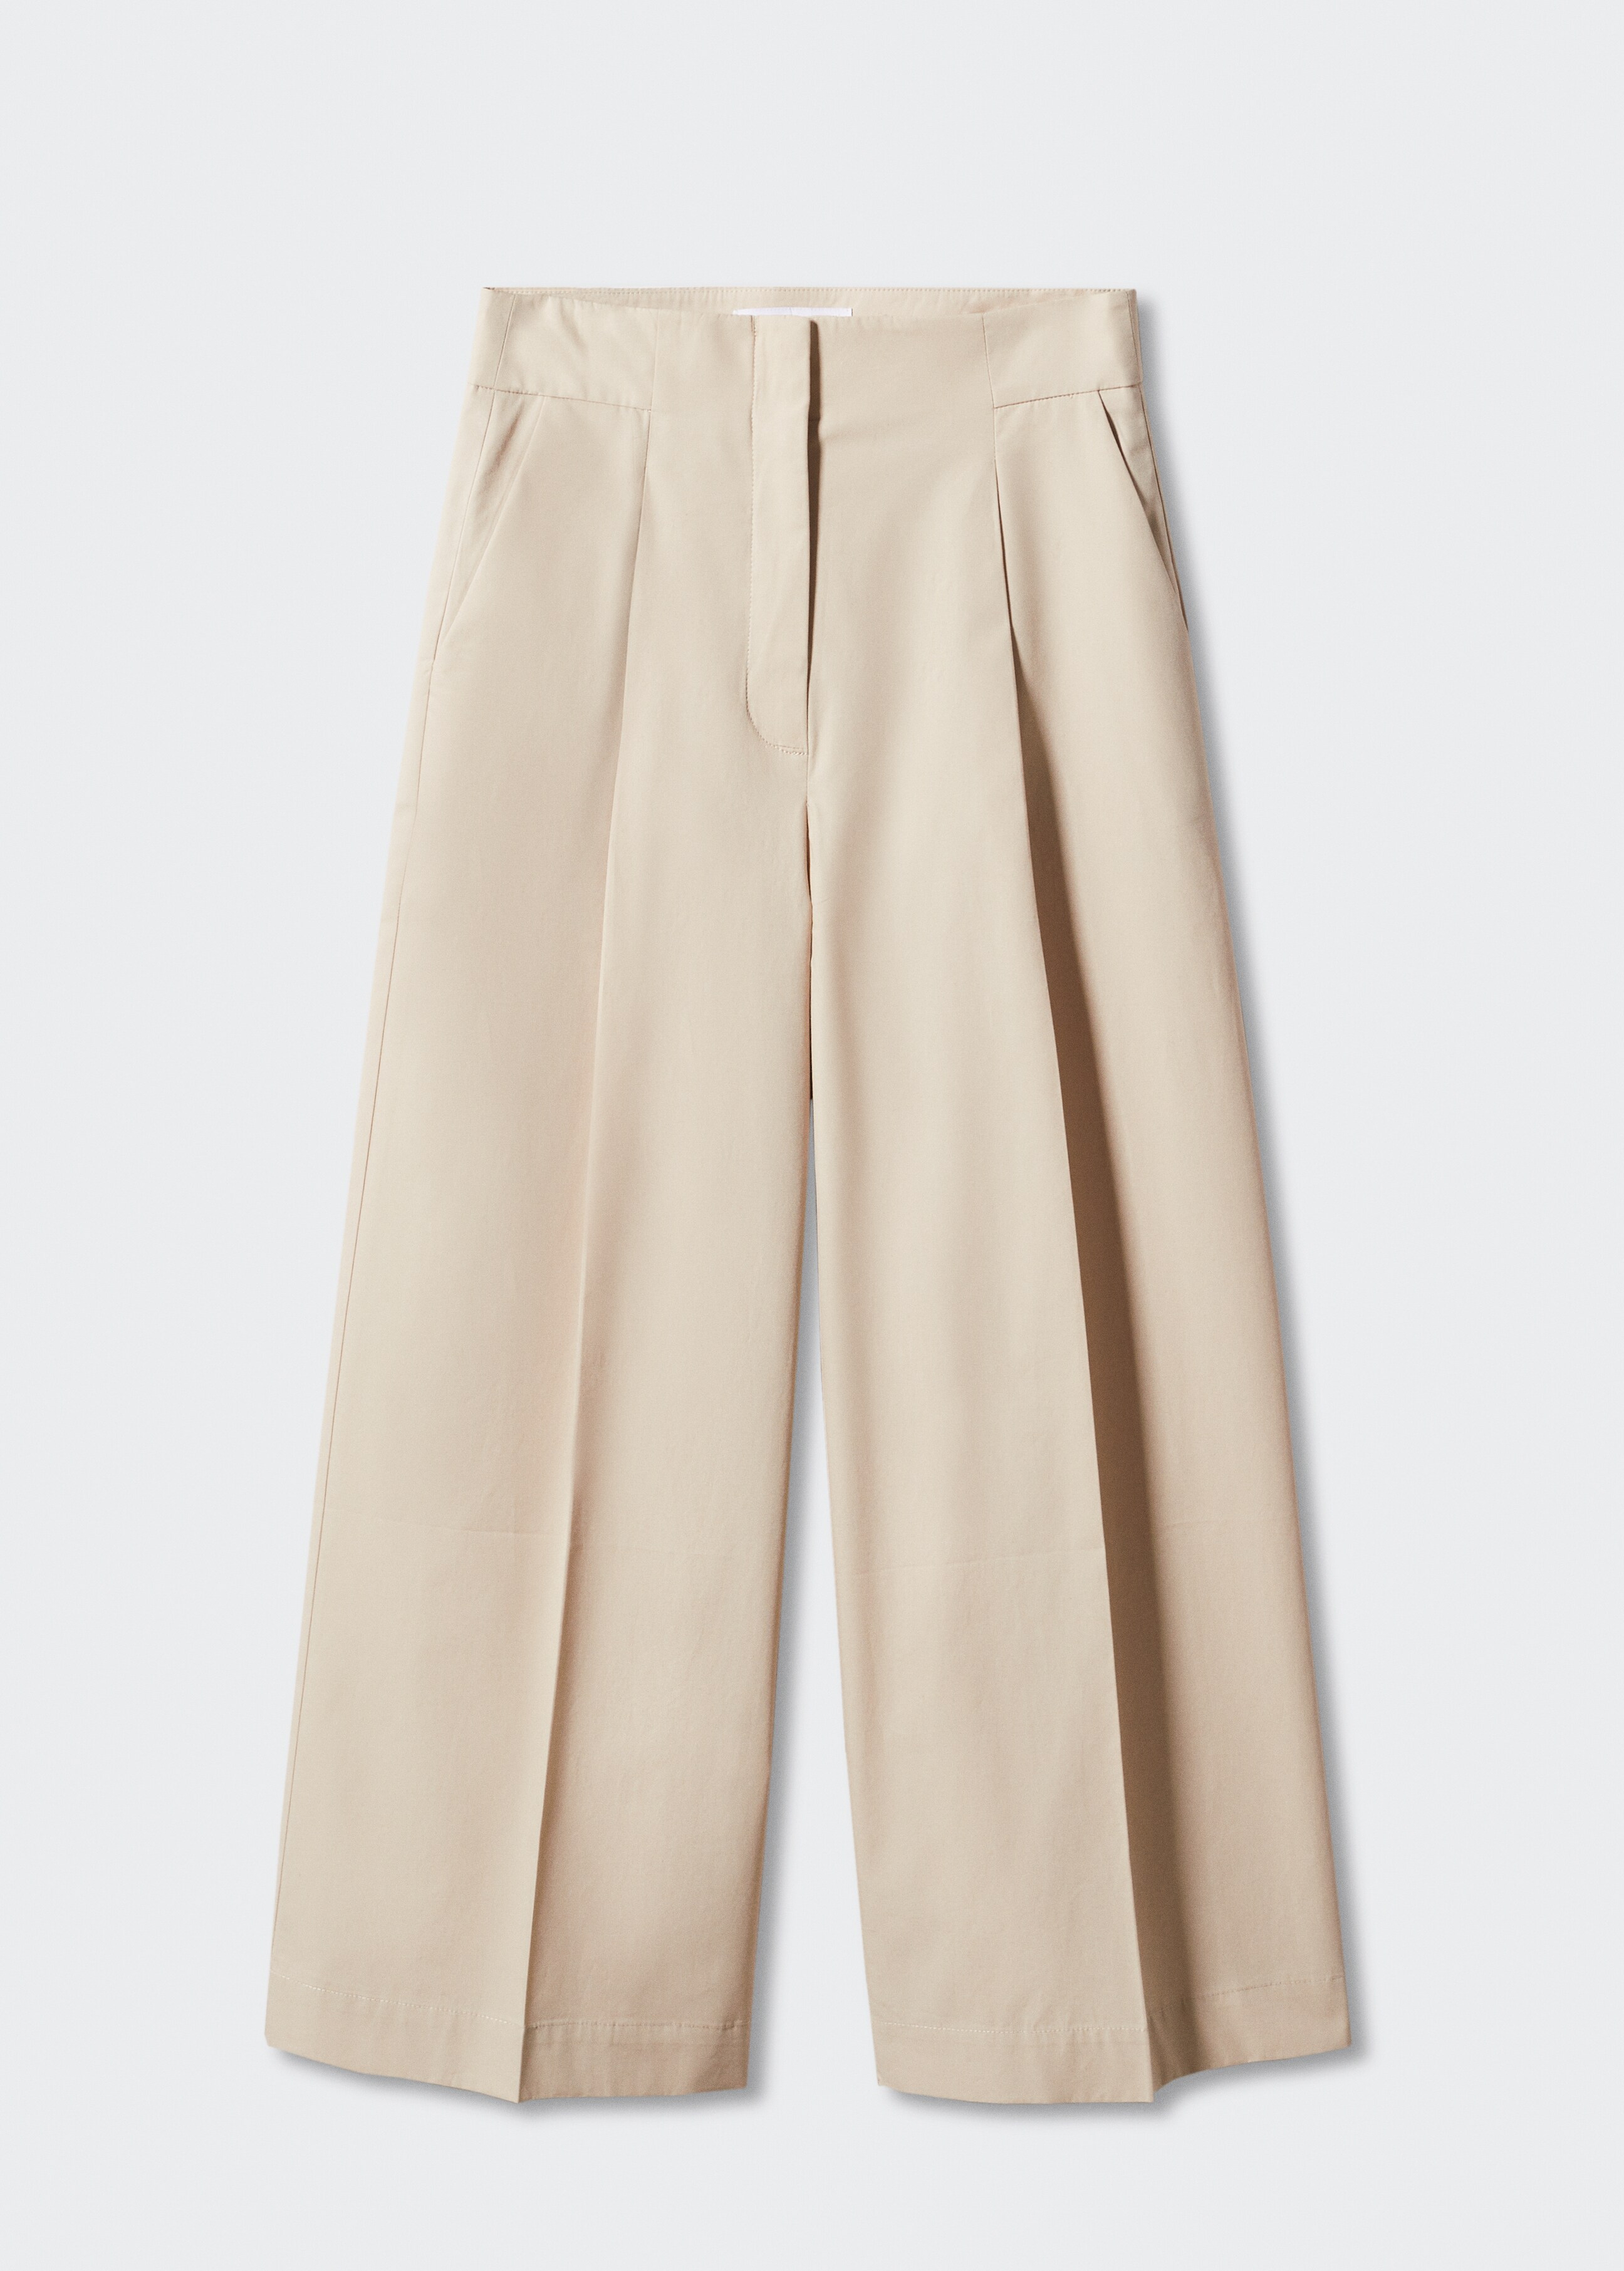 Παντελόνι culotte βαμβακερό - Προϊόν χωρίς μοντέλο